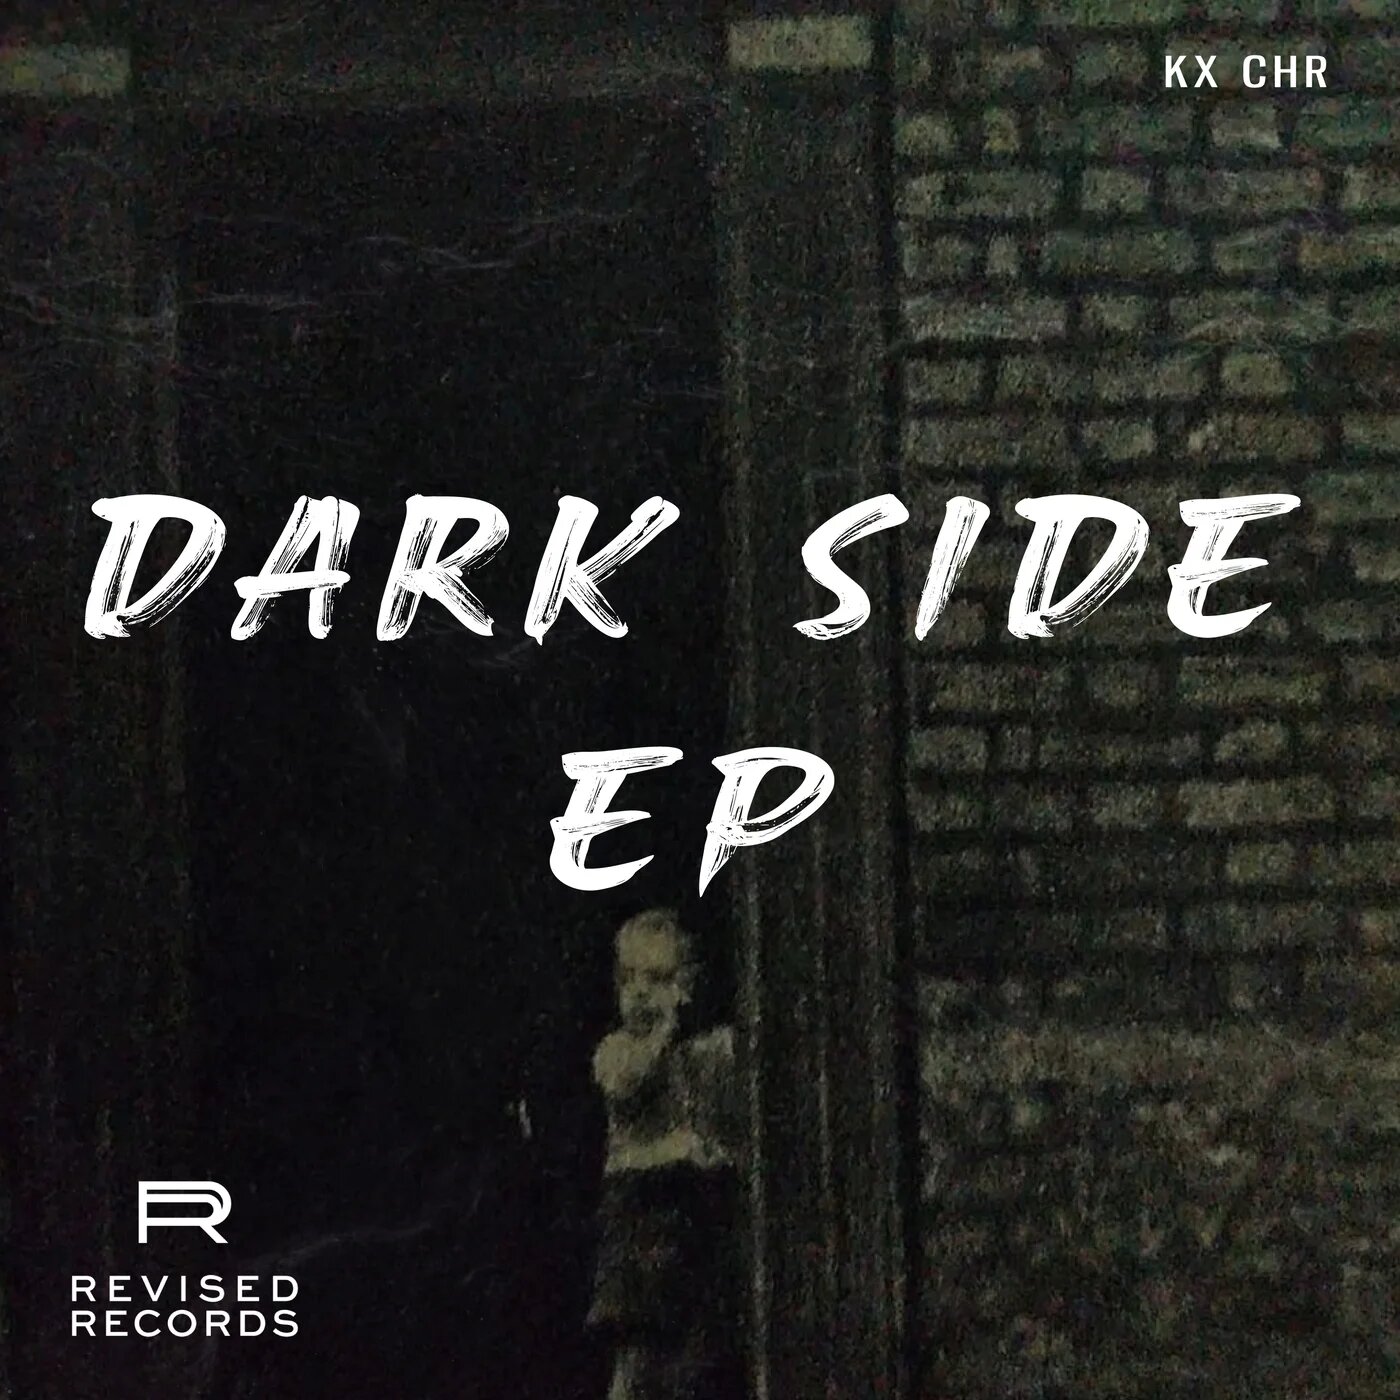 KX CHR - DARK SIDE (Original Mix)